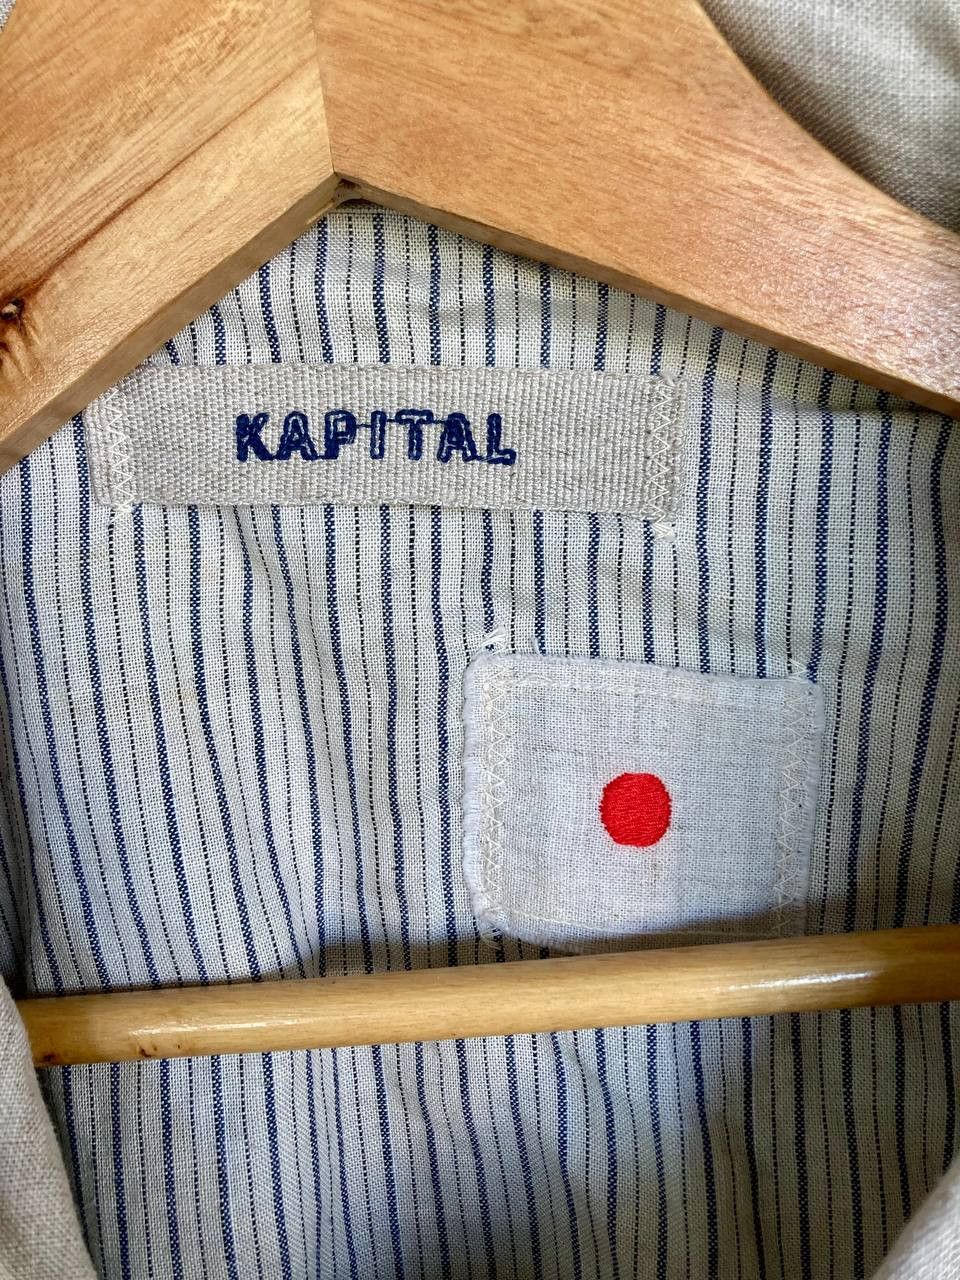 Vintage Kapital Kiro Hirata Buttoned Blouse - 11